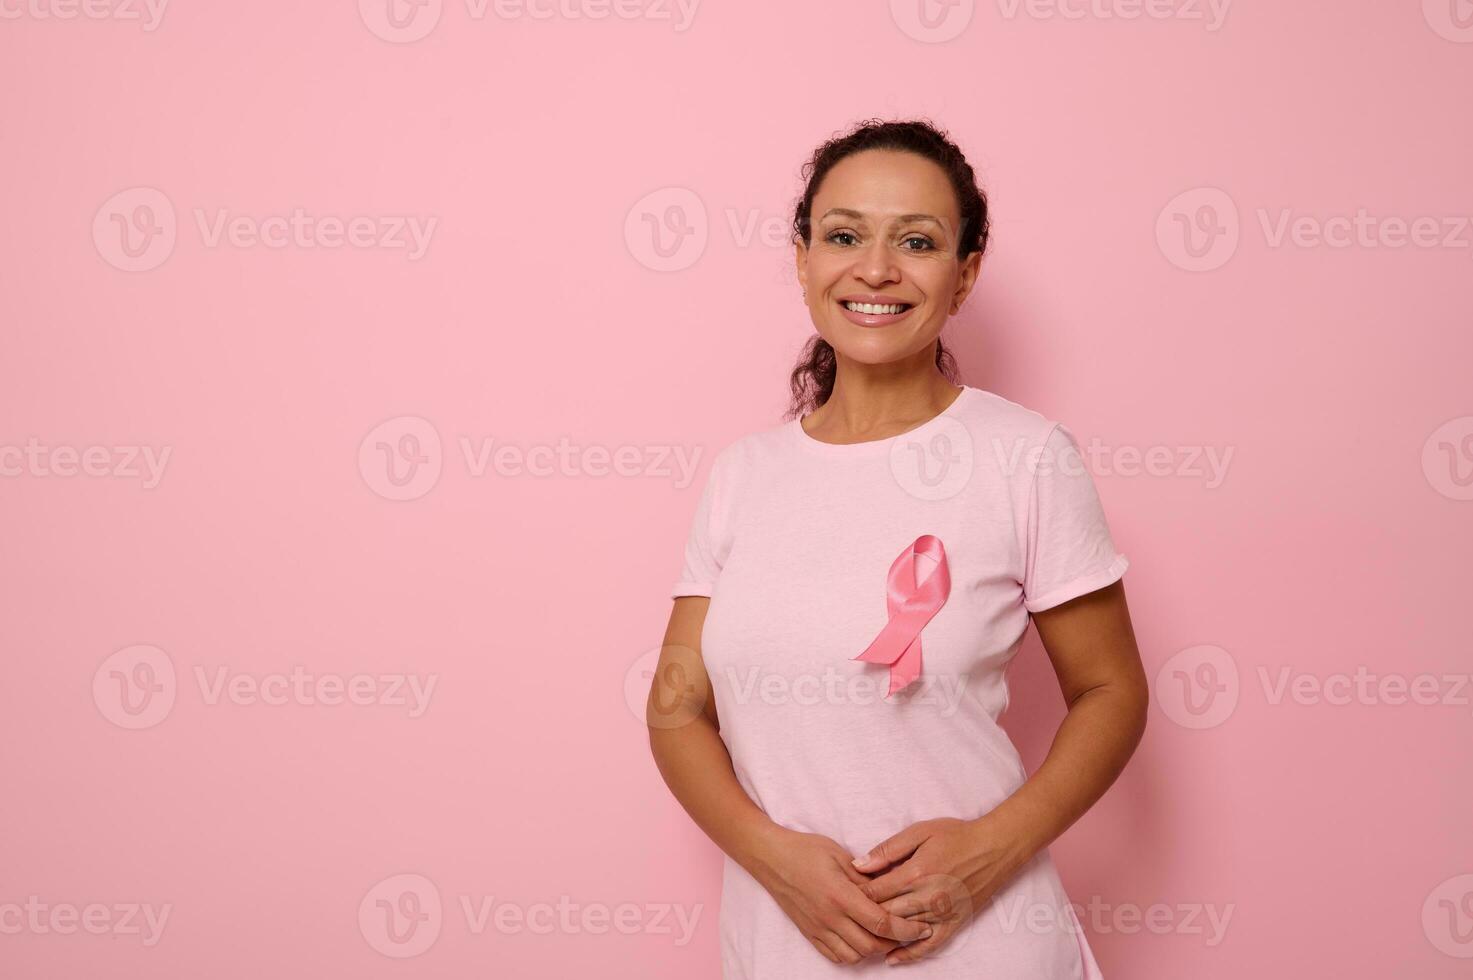 sonriente mezclado carrera mujer en rosado camiseta con rosado satín cinta simbolizando internacional pecho cáncer día, expresando solidaridad y apoyo para pecho cáncer pacientes y sobrevivientes 1 S t octubre foto